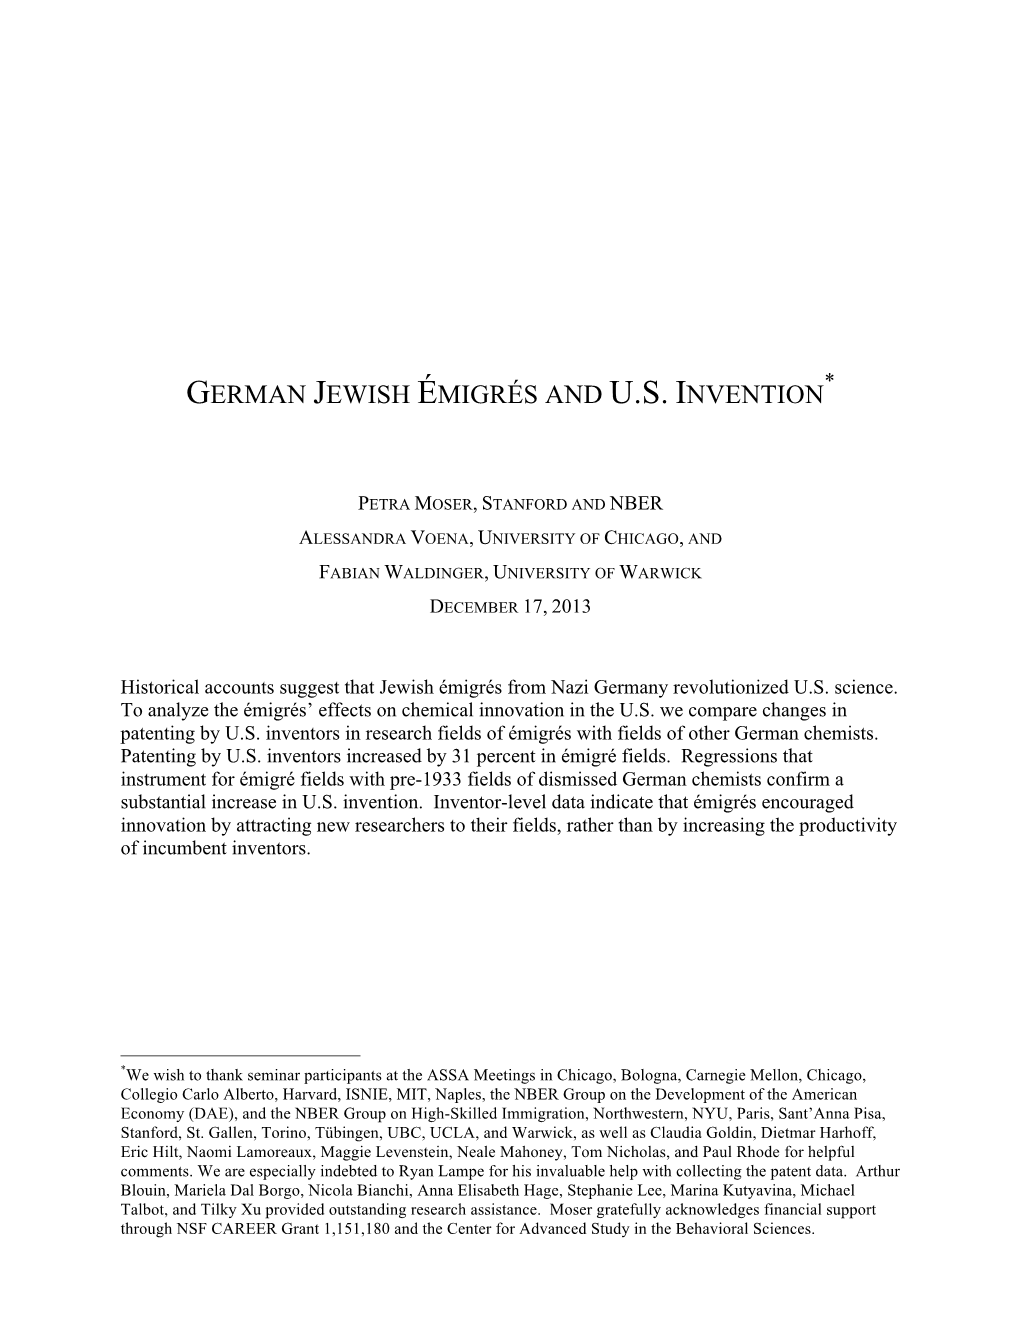 German Jewish Émigrés and U.S. Invention